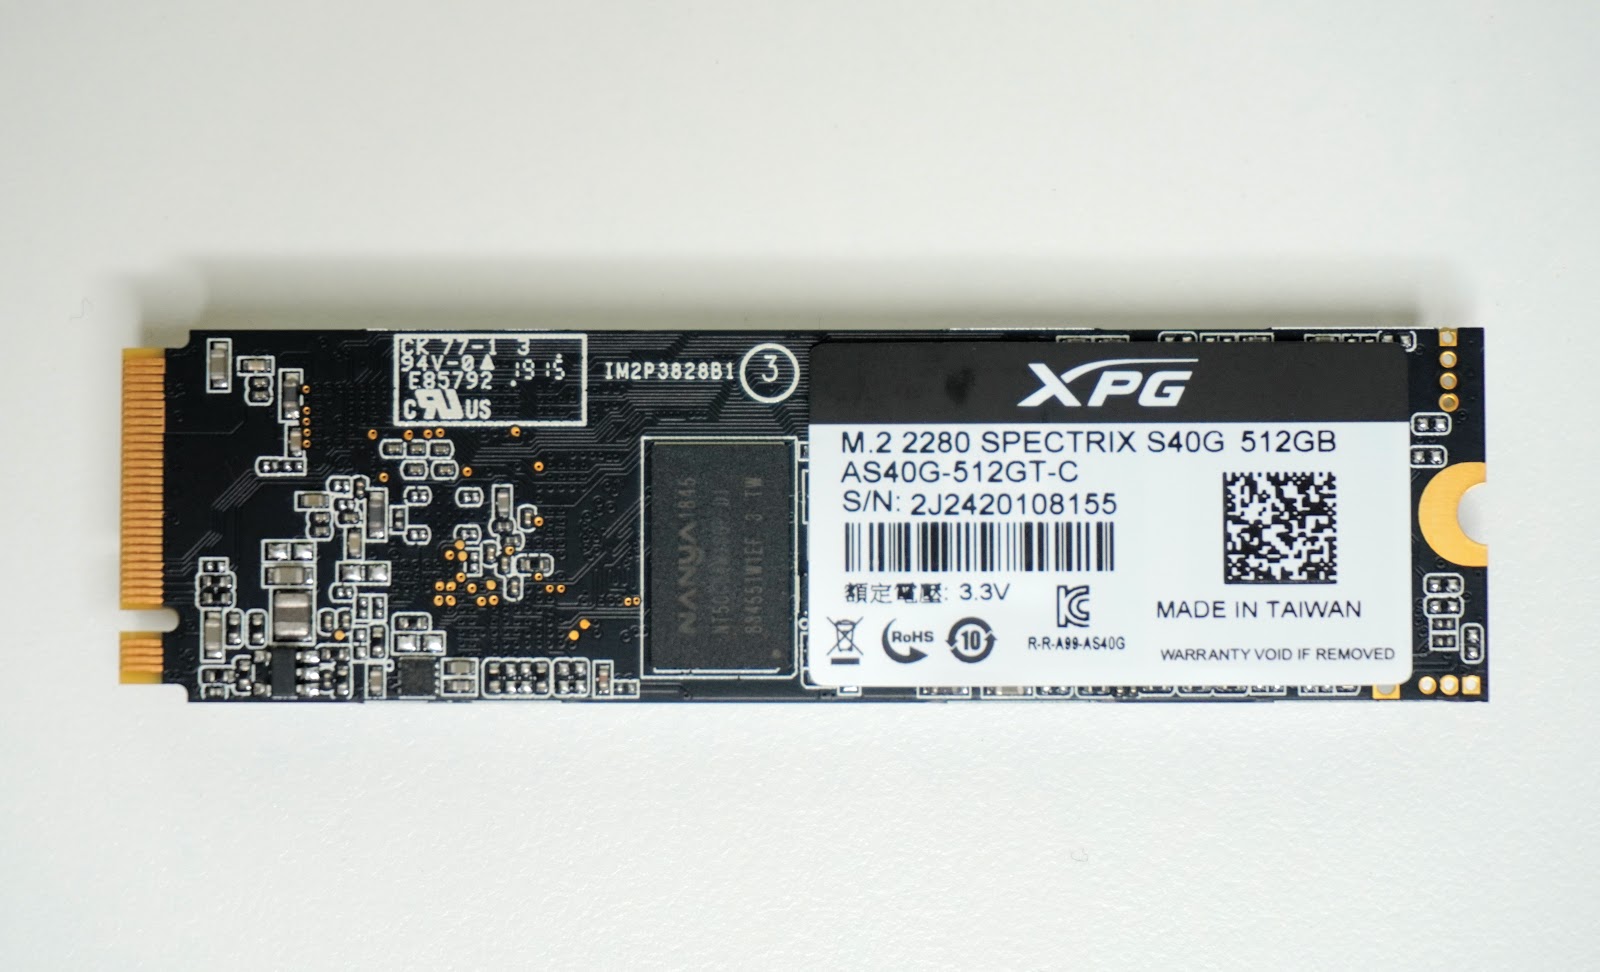 視覺先決! XPG SPECTRIX S40G RGB PCIe M.2 SSD 評測輕開箱| UNIKO's 